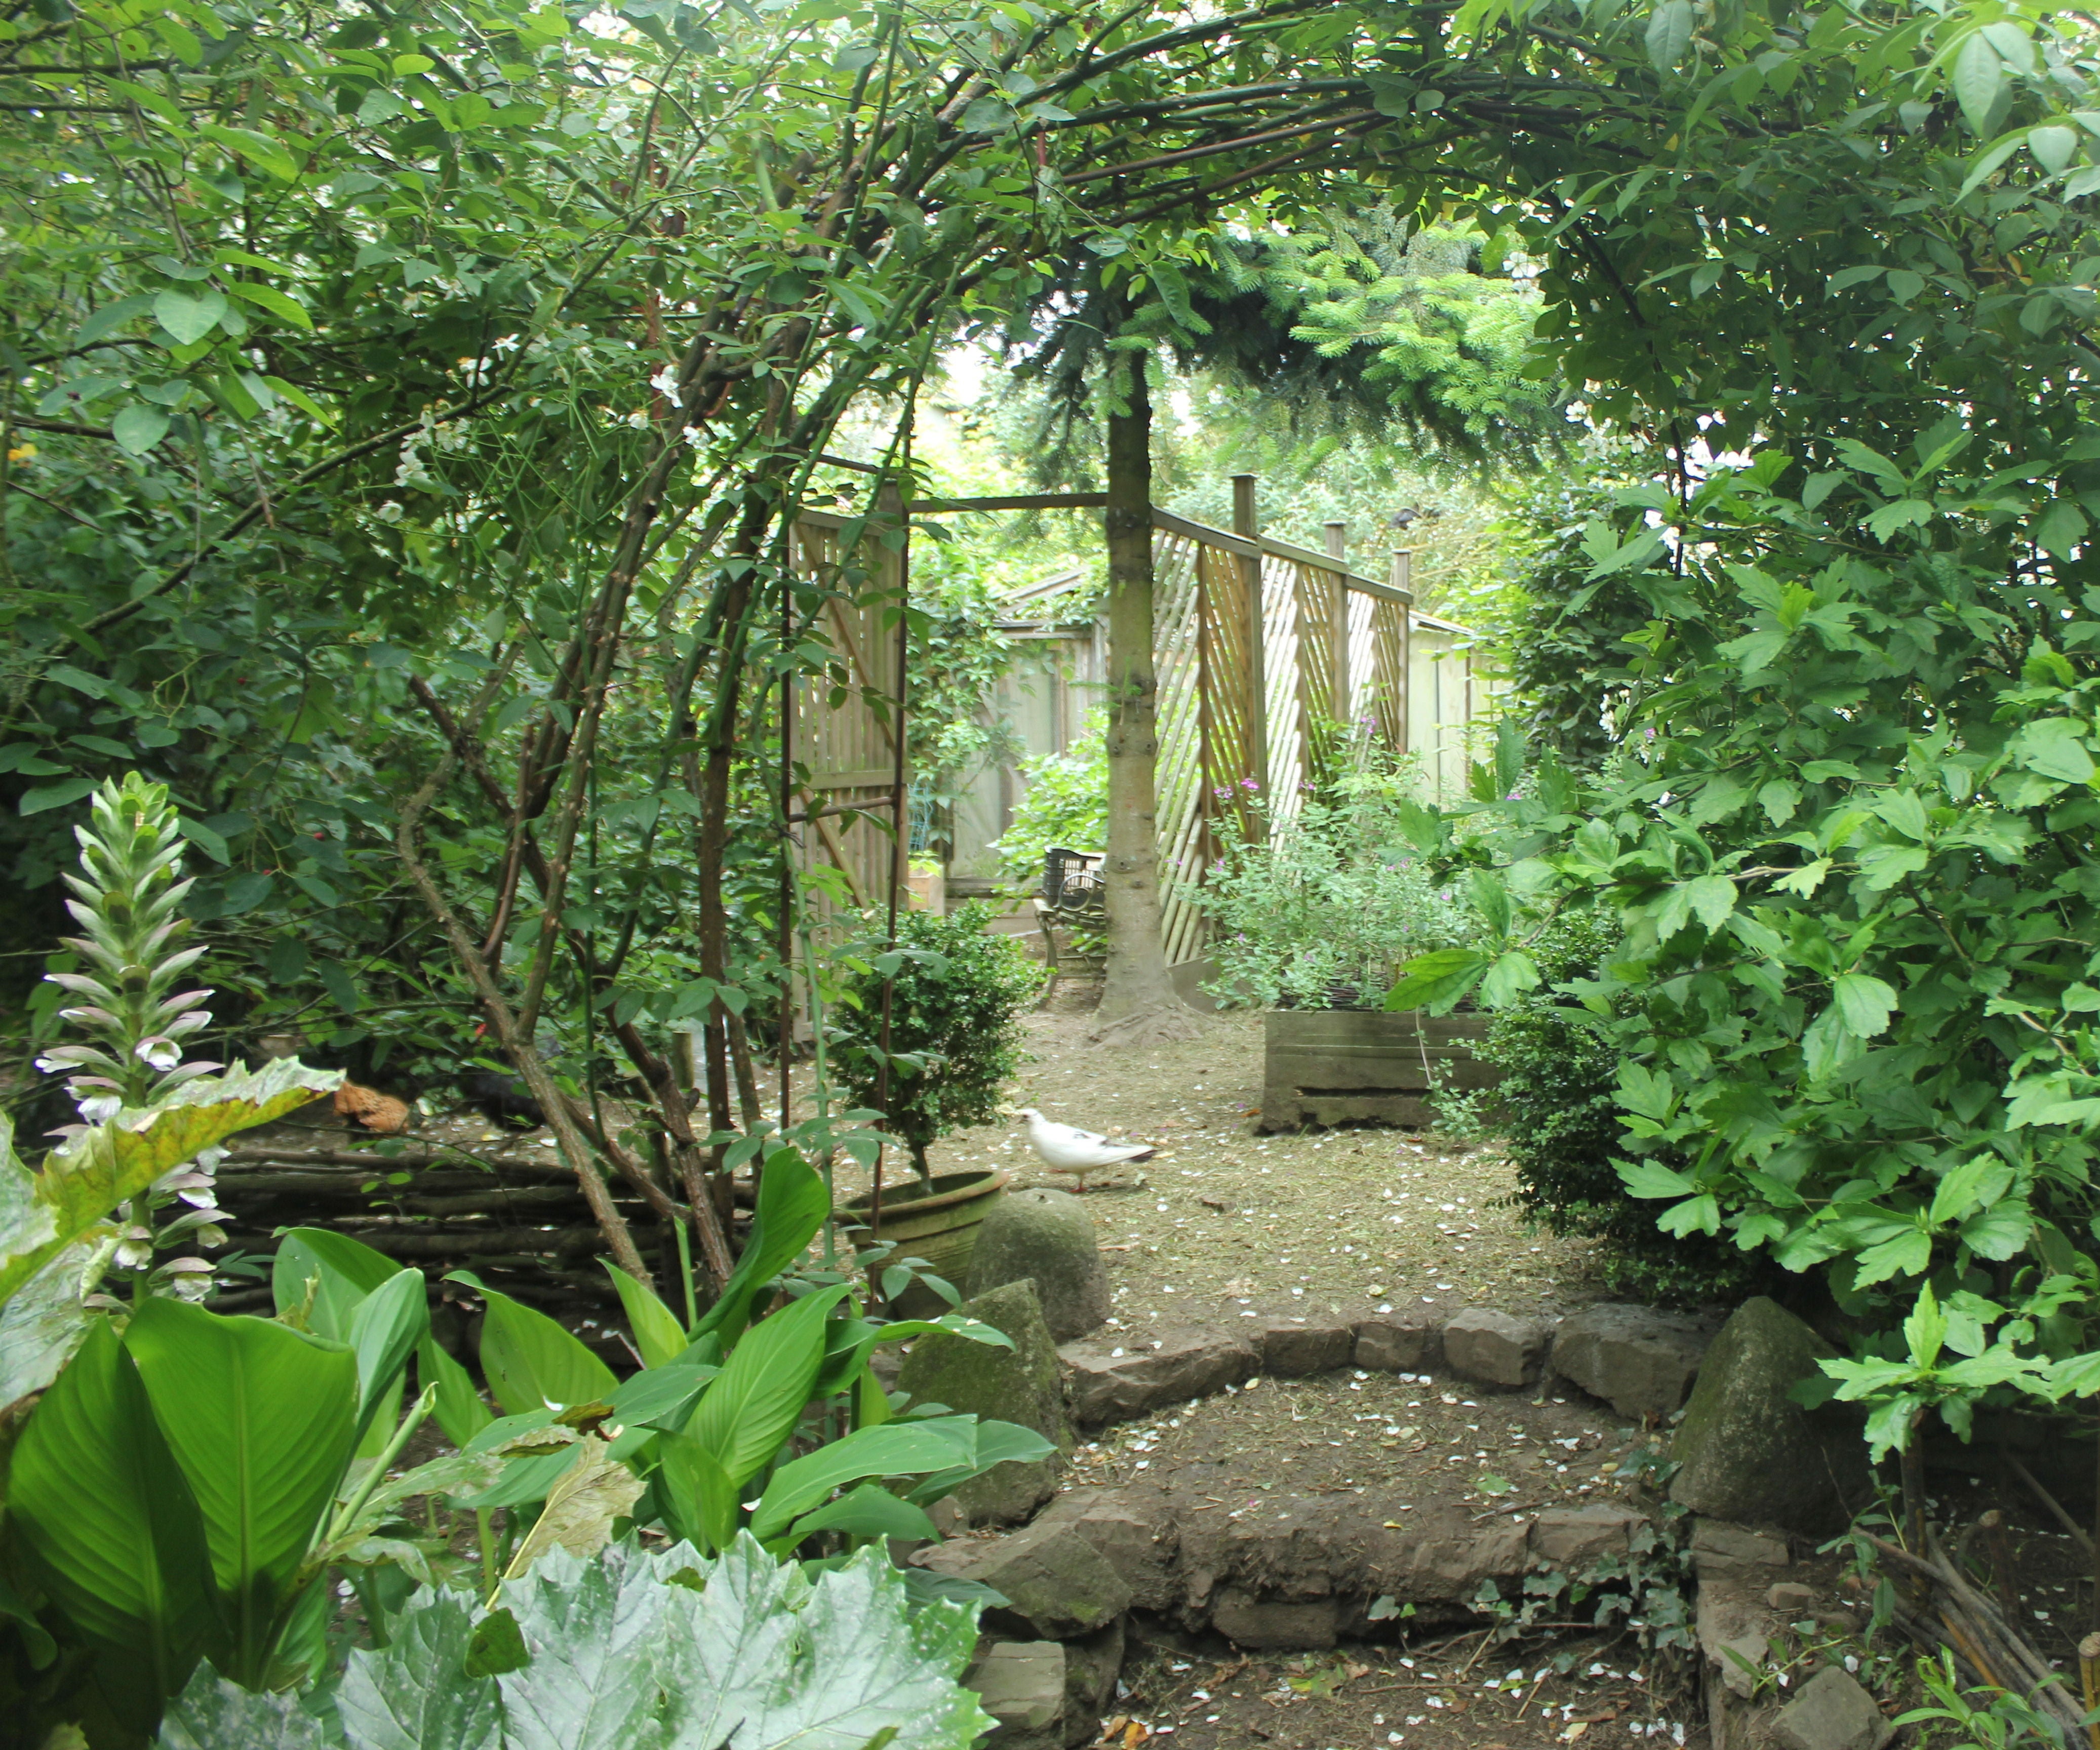 Trellised Garden Retreat/Gazebo/Arbor From Pallet Wood